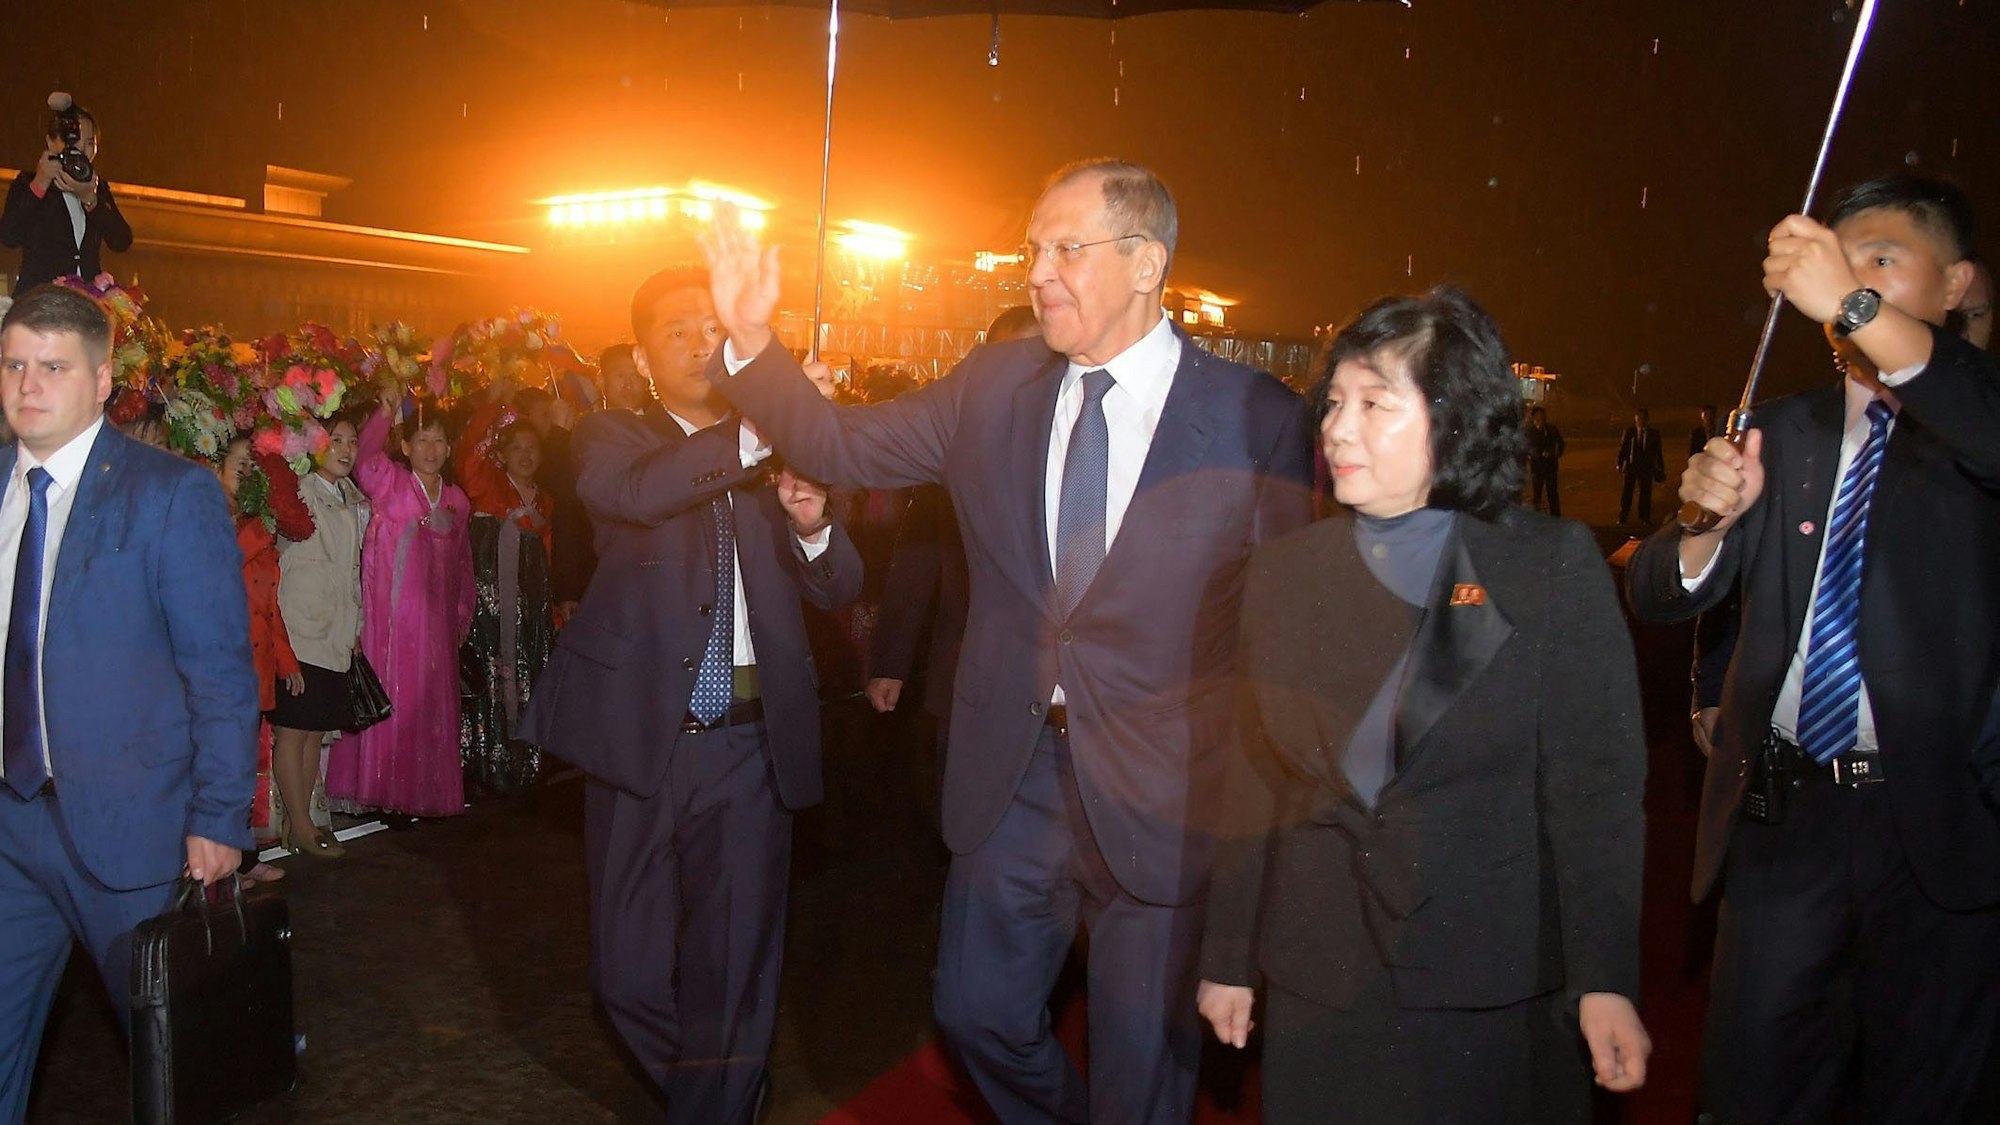 Russlands Außenminister Sergej Lawrow neben seinem nordkoreanischen Amtskollegen Choe Son Hui bei seiner Ankunft auf dem internationalen Flughafen von Pjöngjang. Unabhängige Journalisten hatten keinen Zugang zu der Veranstaltung.